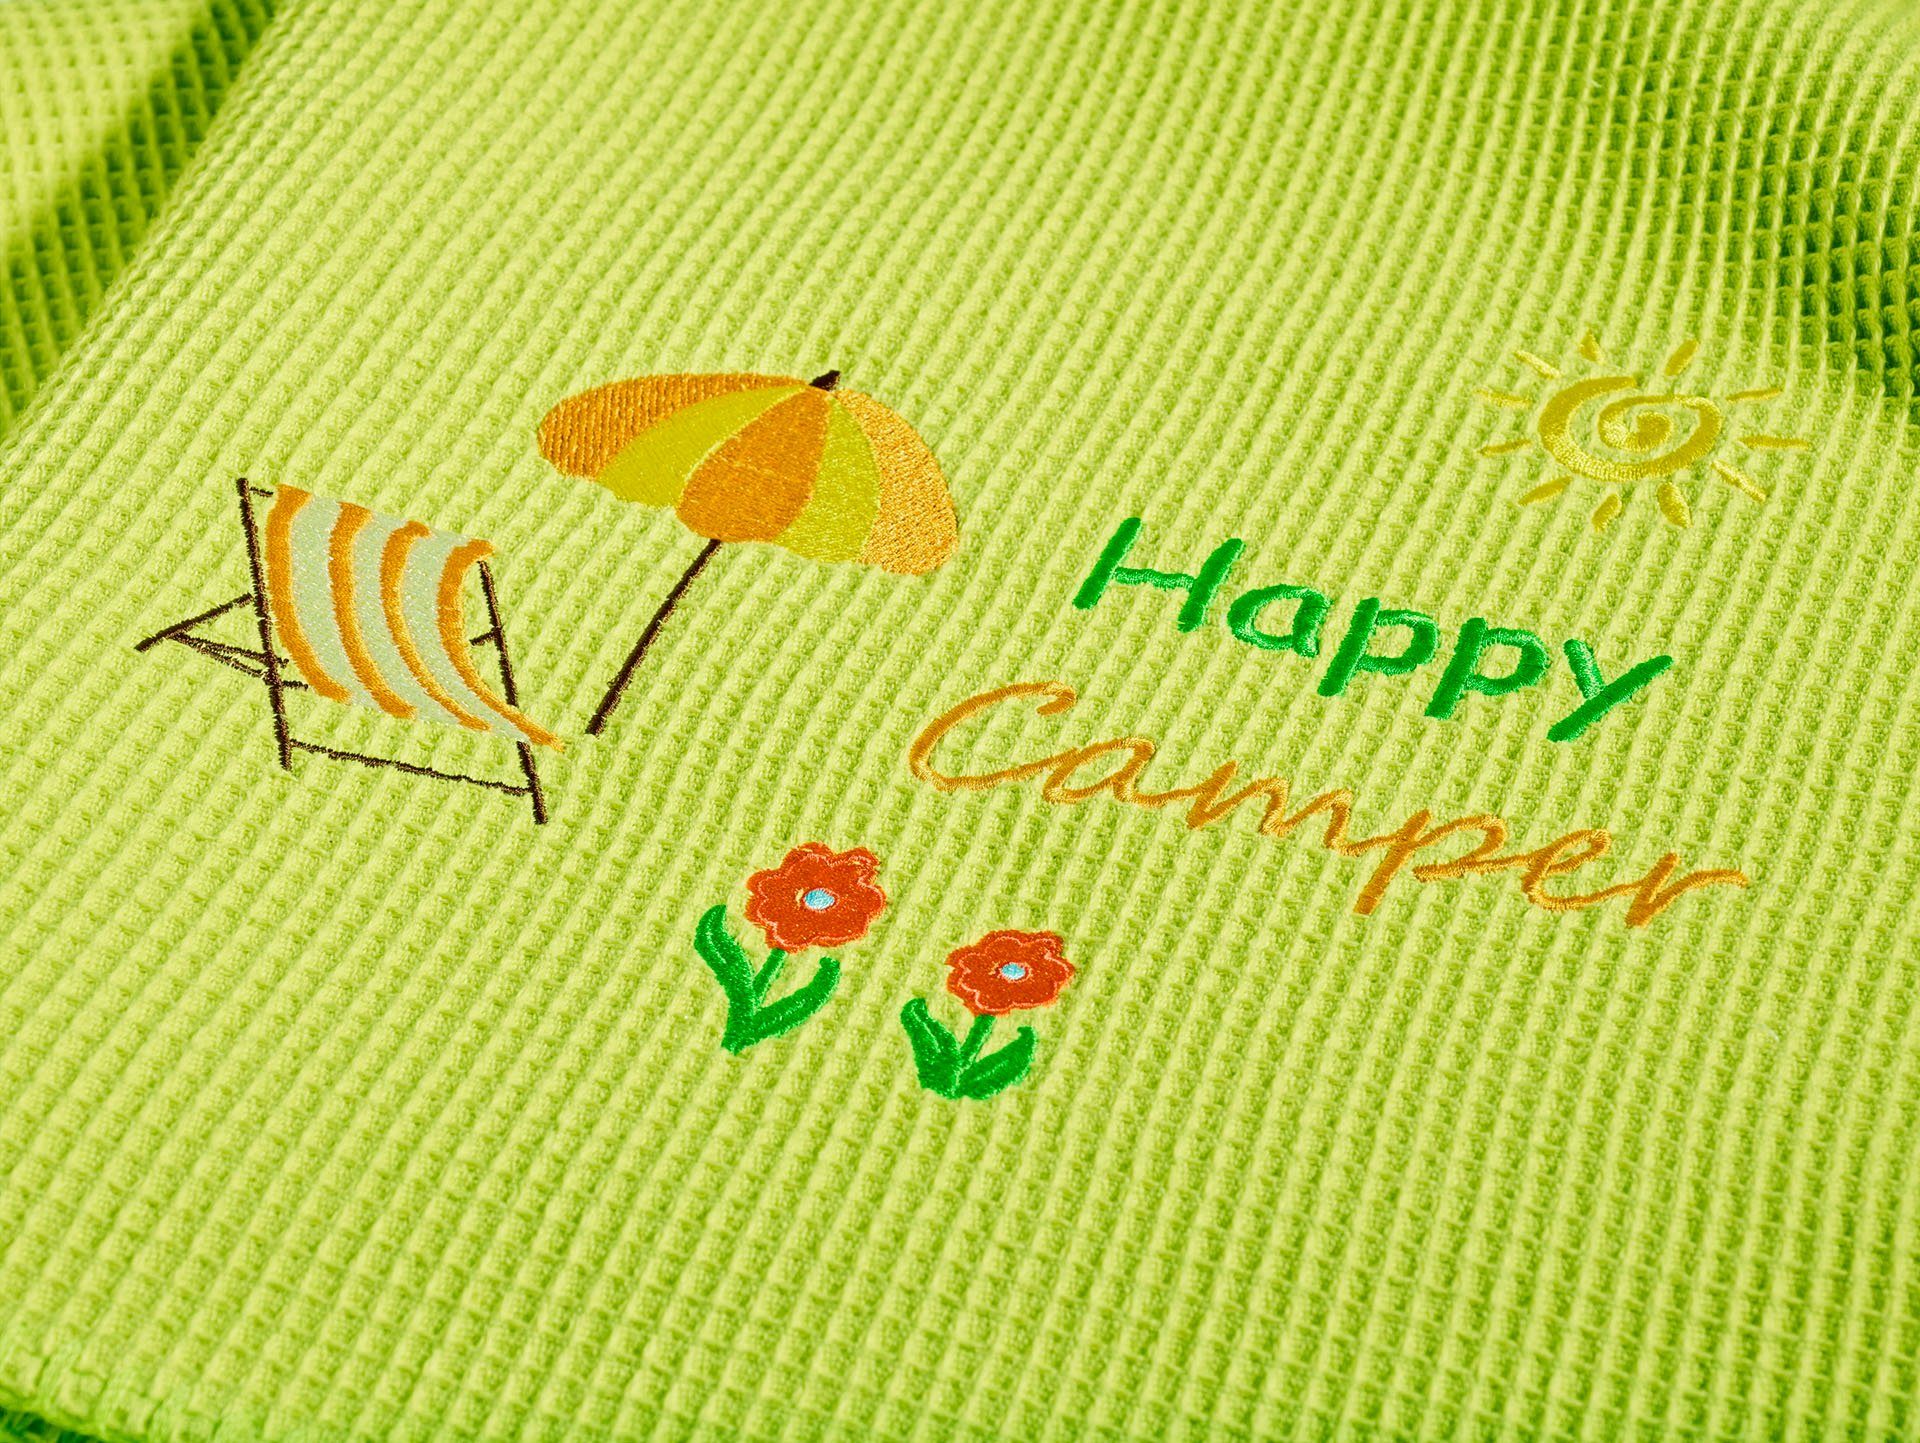 Wohndecke Happy Camper, apfelgrün Kneer, geketteltem Baumwolle, Zierstich, Schriftzug